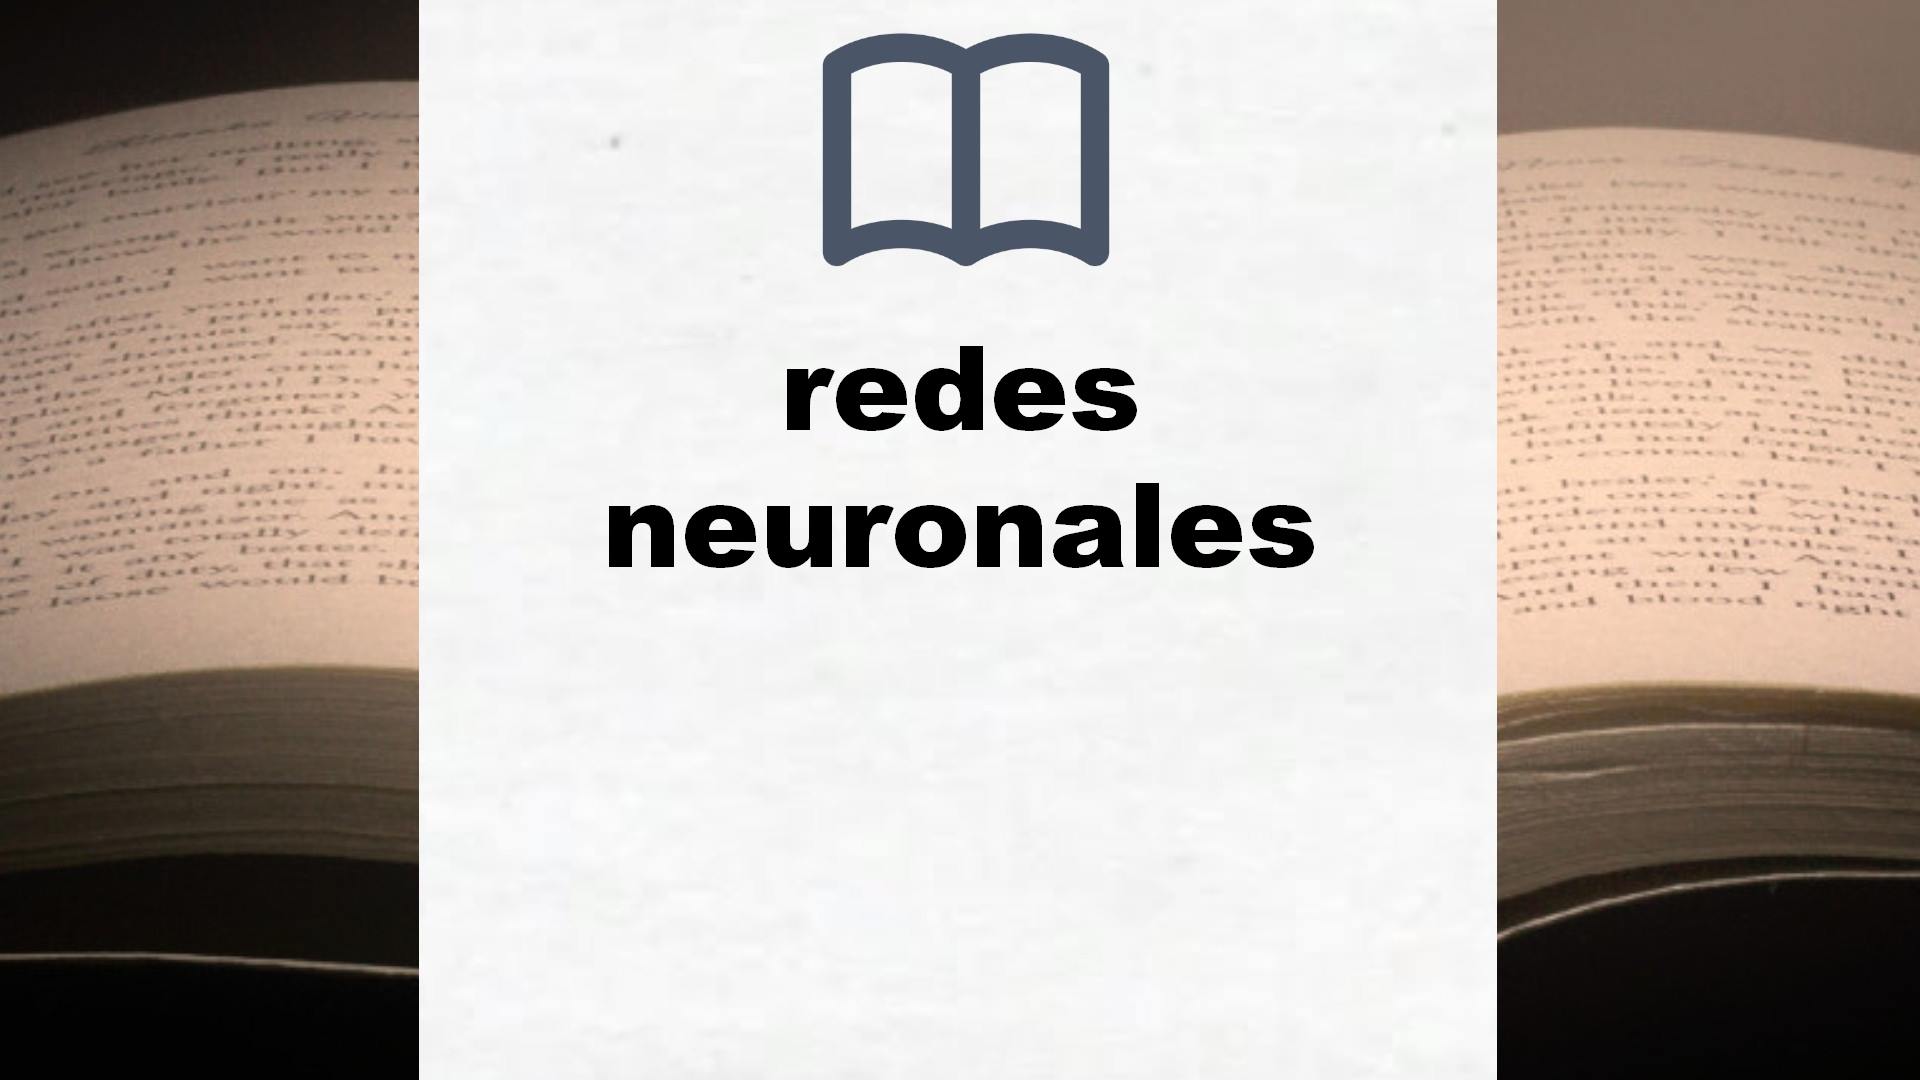 Libros sobre redes neuronales